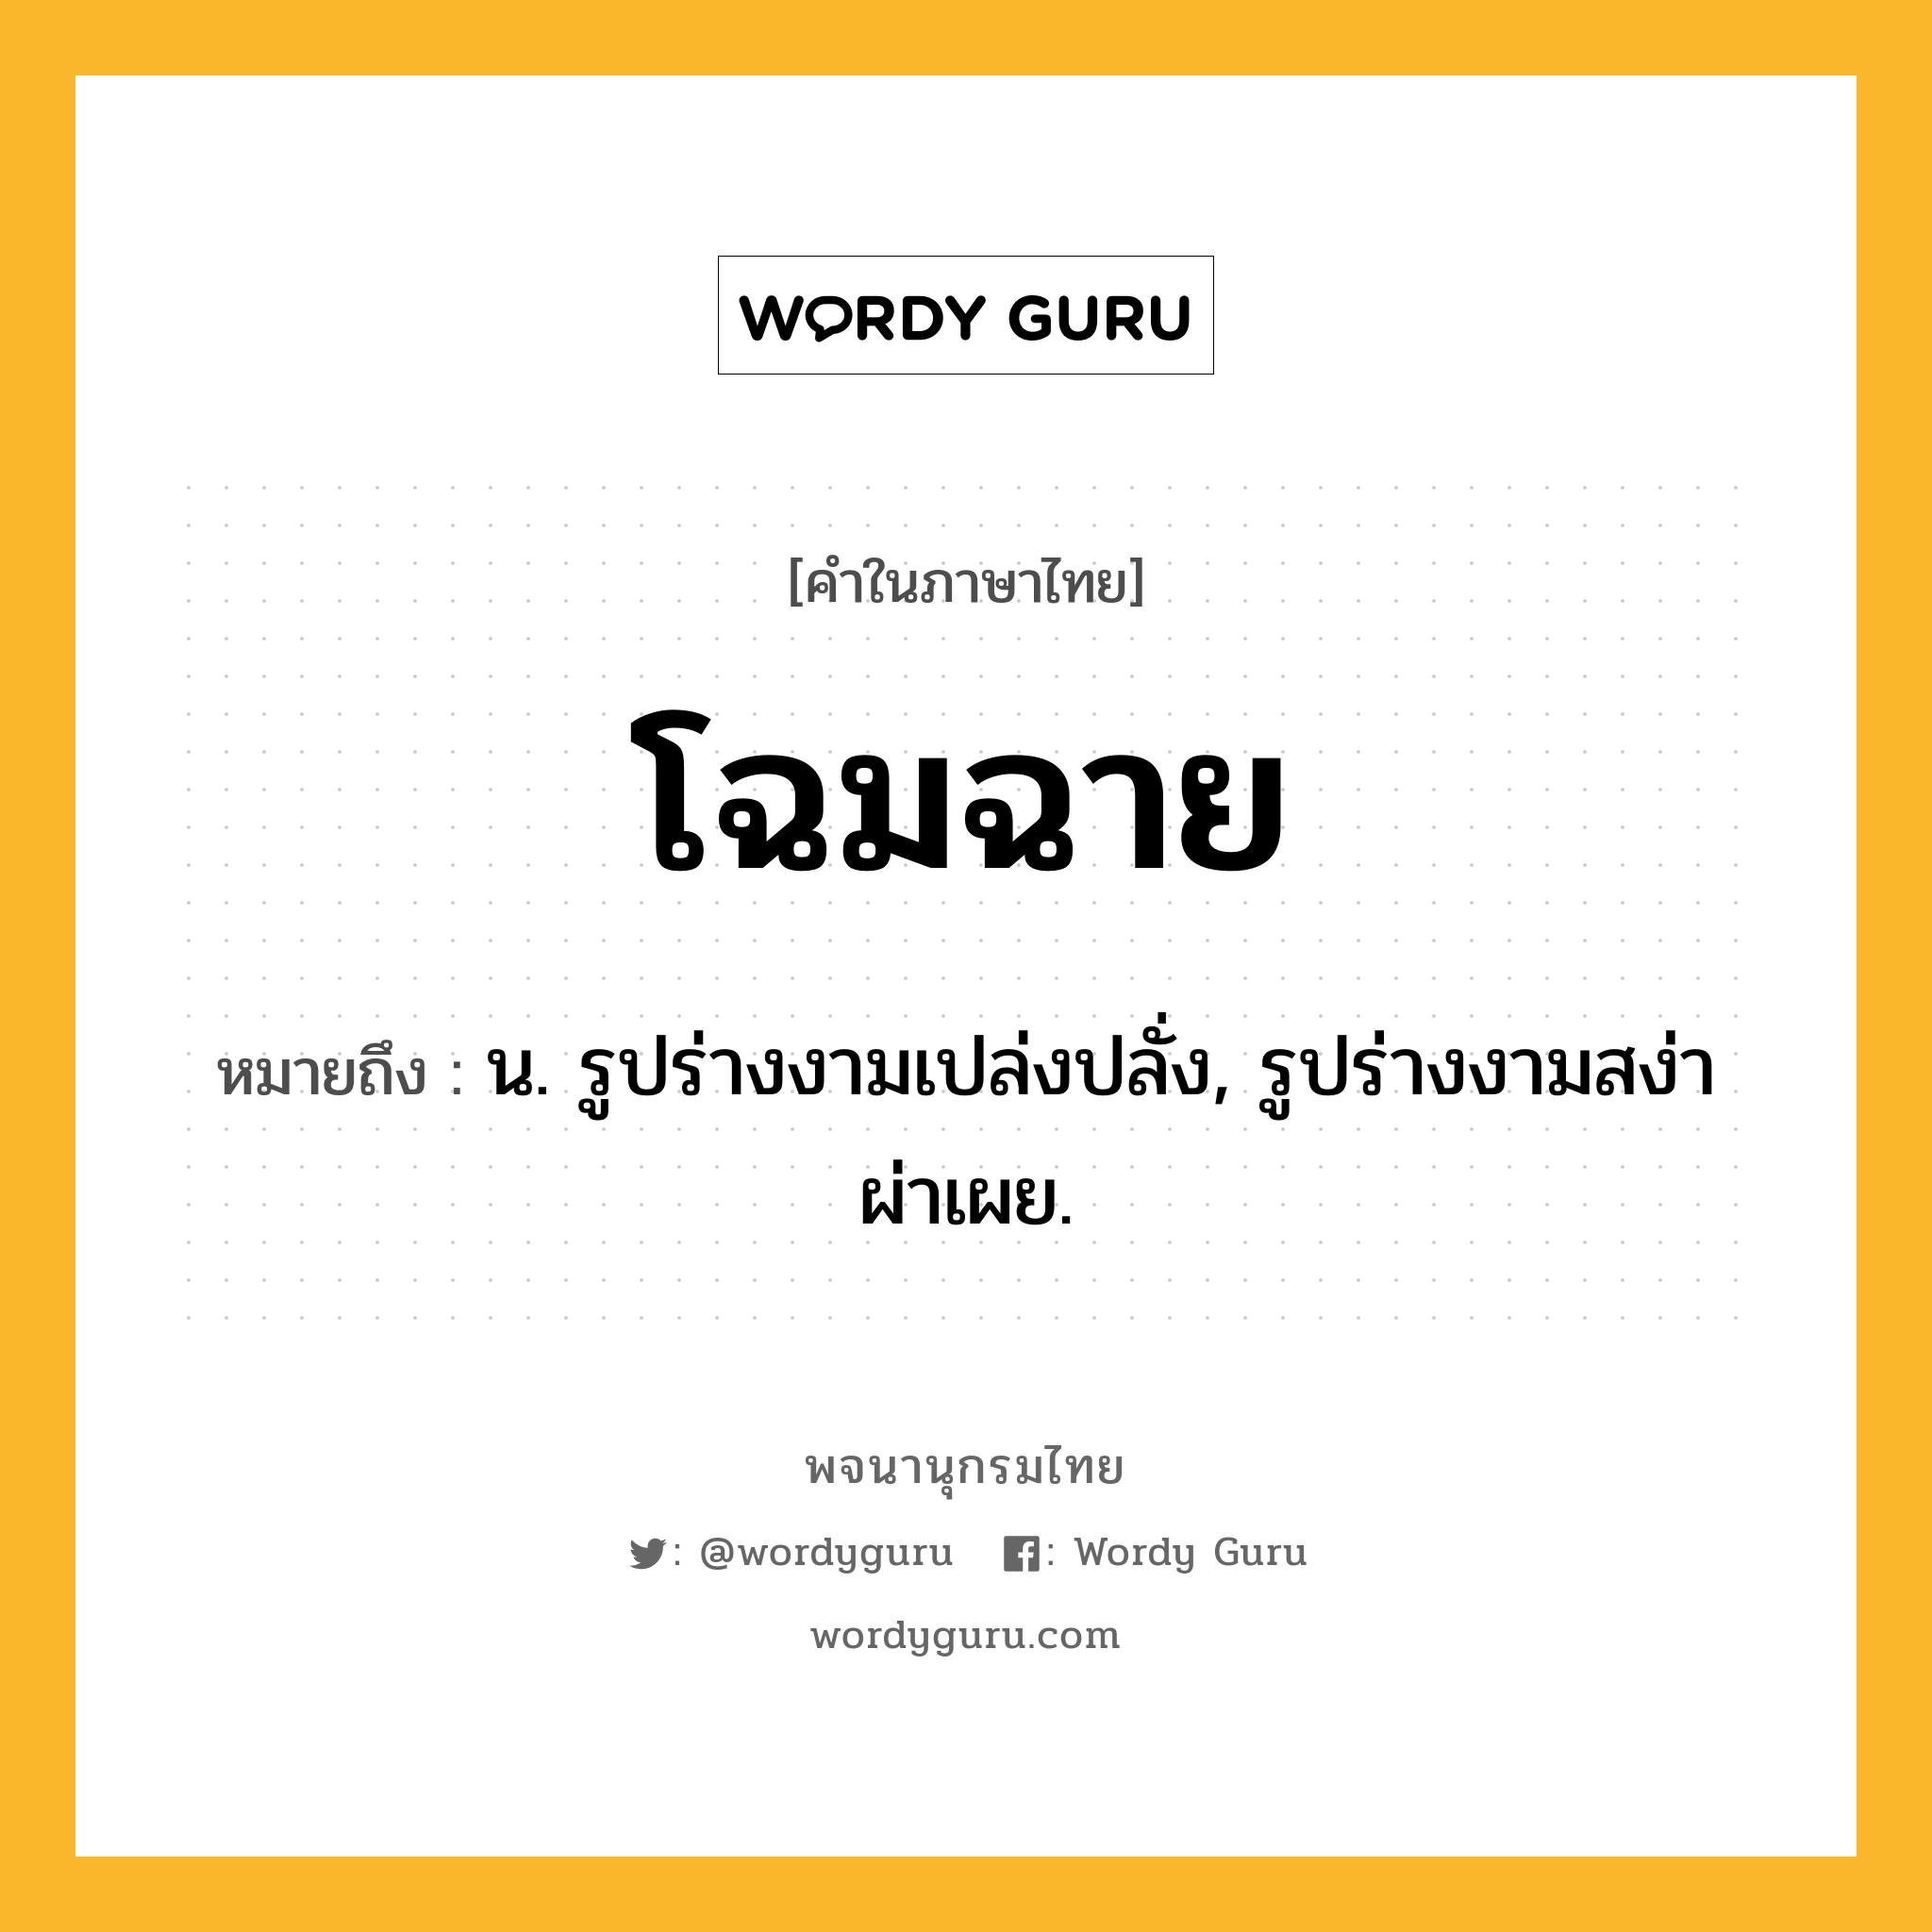 โฉมฉาย หมายถึงอะไร?, คำในภาษาไทย โฉมฉาย หมายถึง น. รูปร่างงามเปล่งปลั่ง, รูปร่างงามสง่าผ่าเผย.